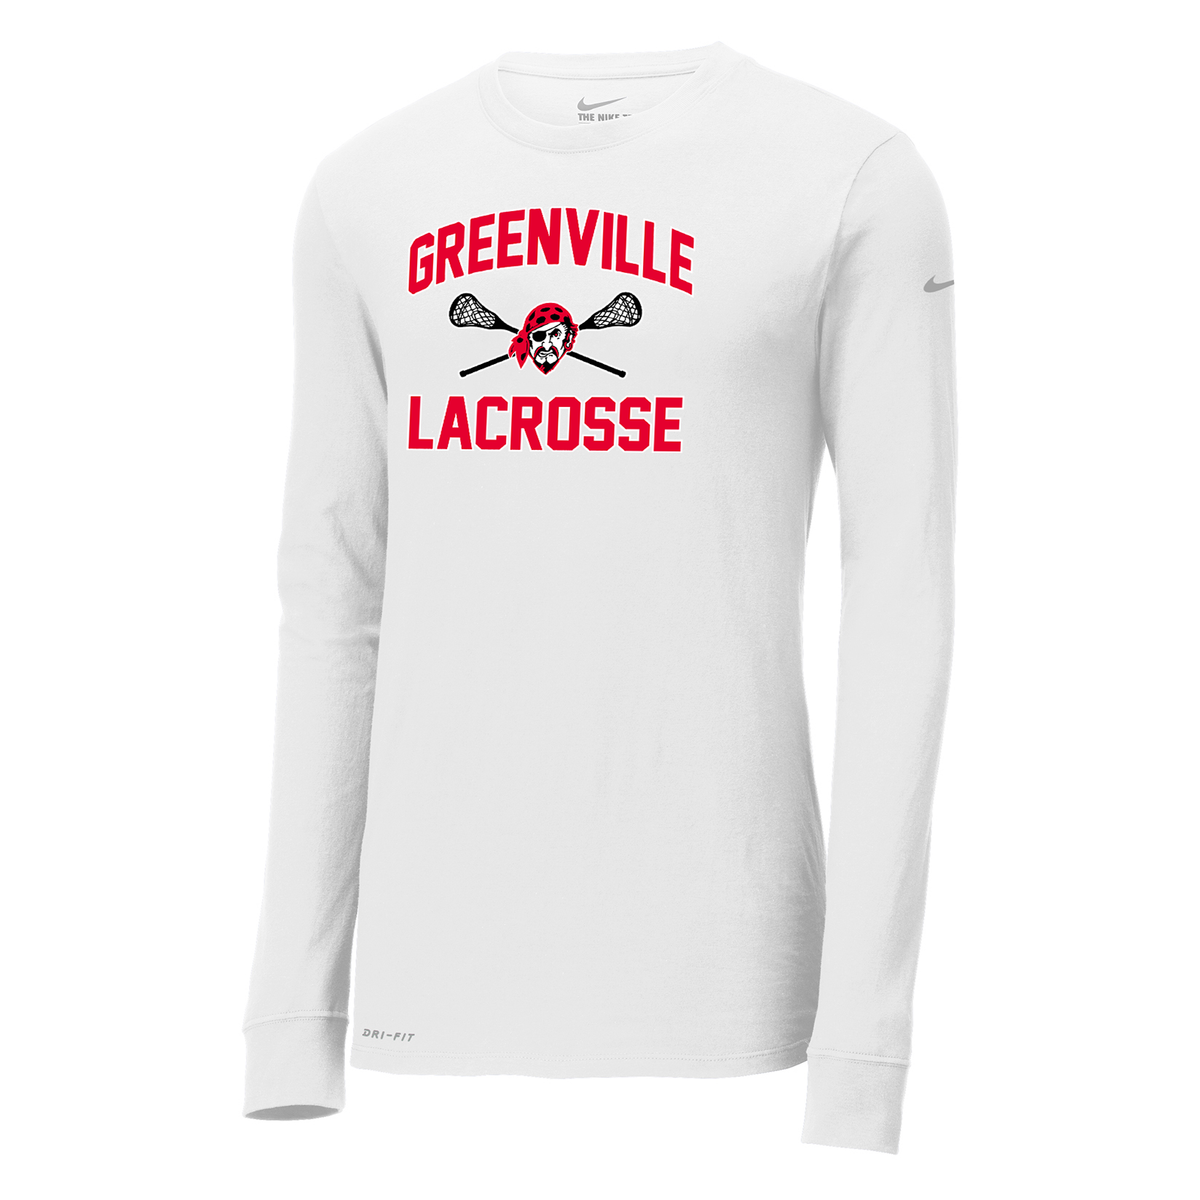 Greenville Girls Lacrosse Nike Dri-FIT Long Sleeve Tee